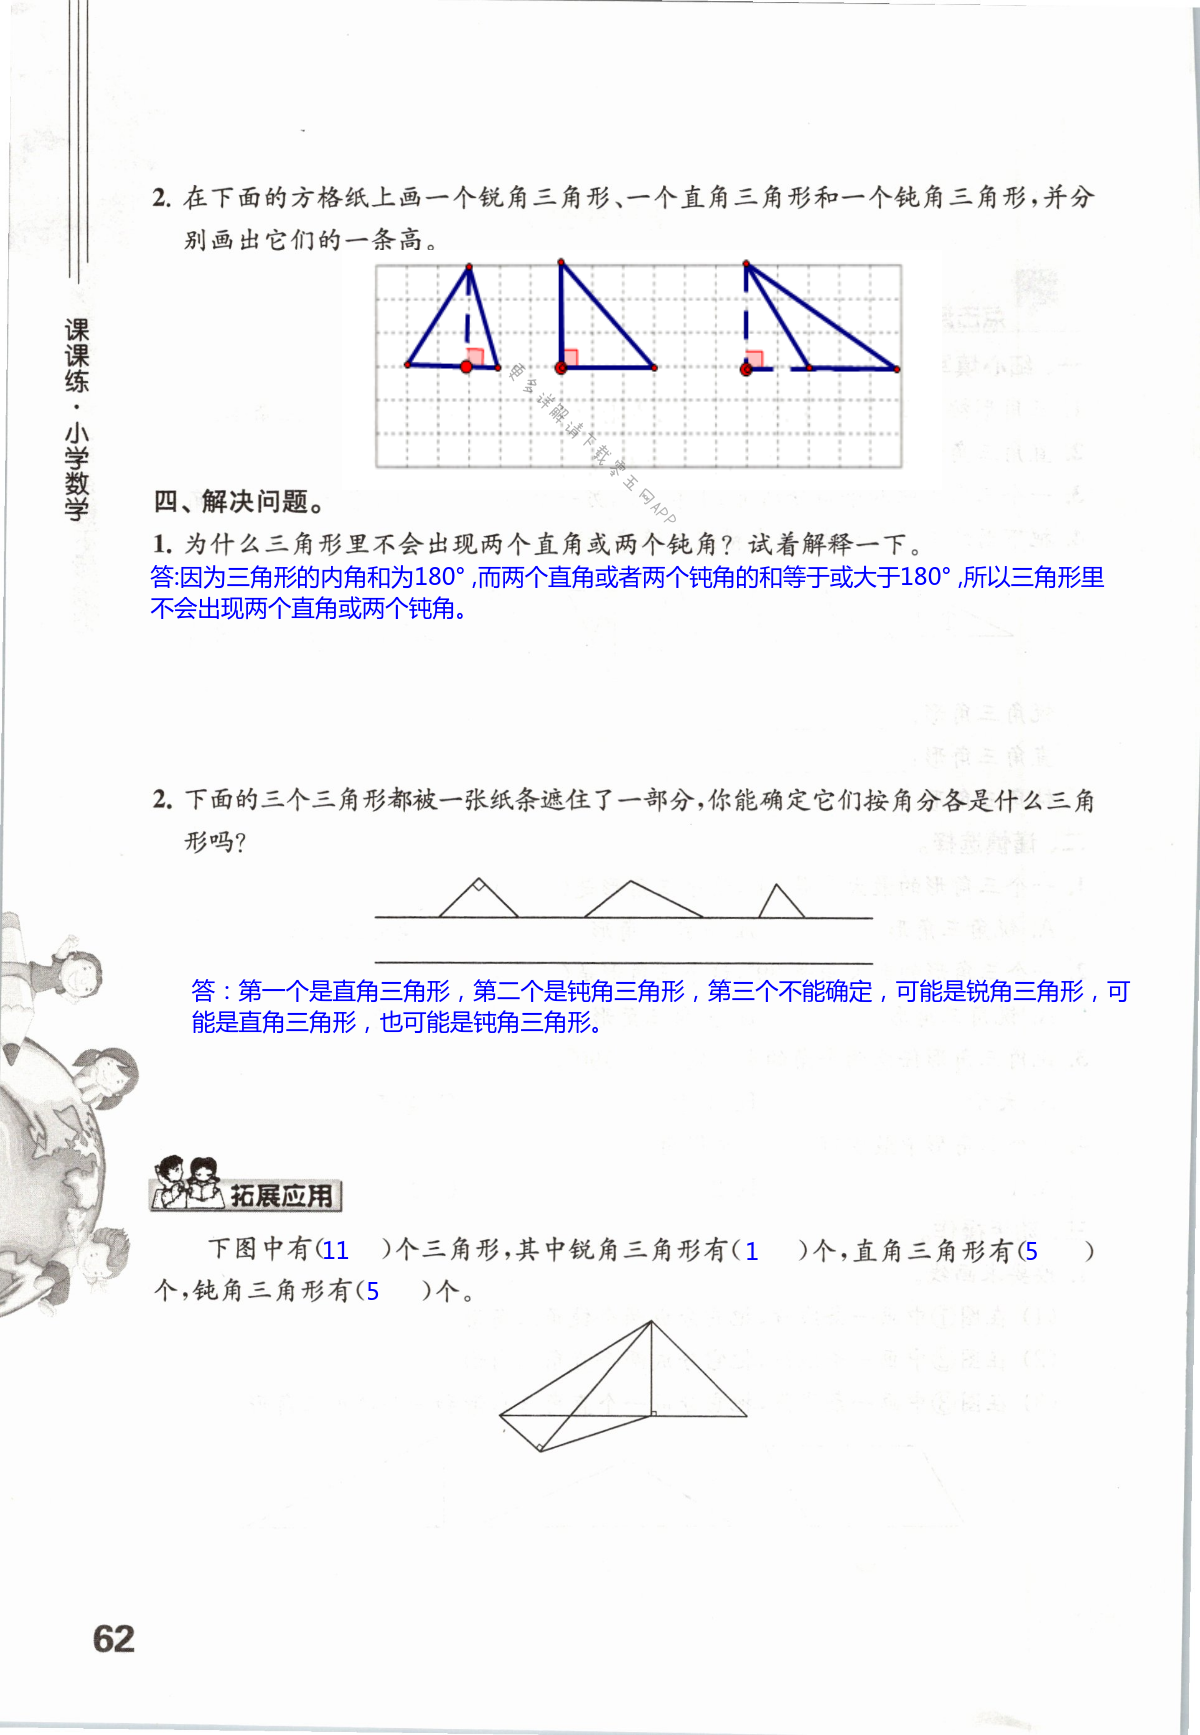 七 三角形、平行四边形和梯形 - 第62页